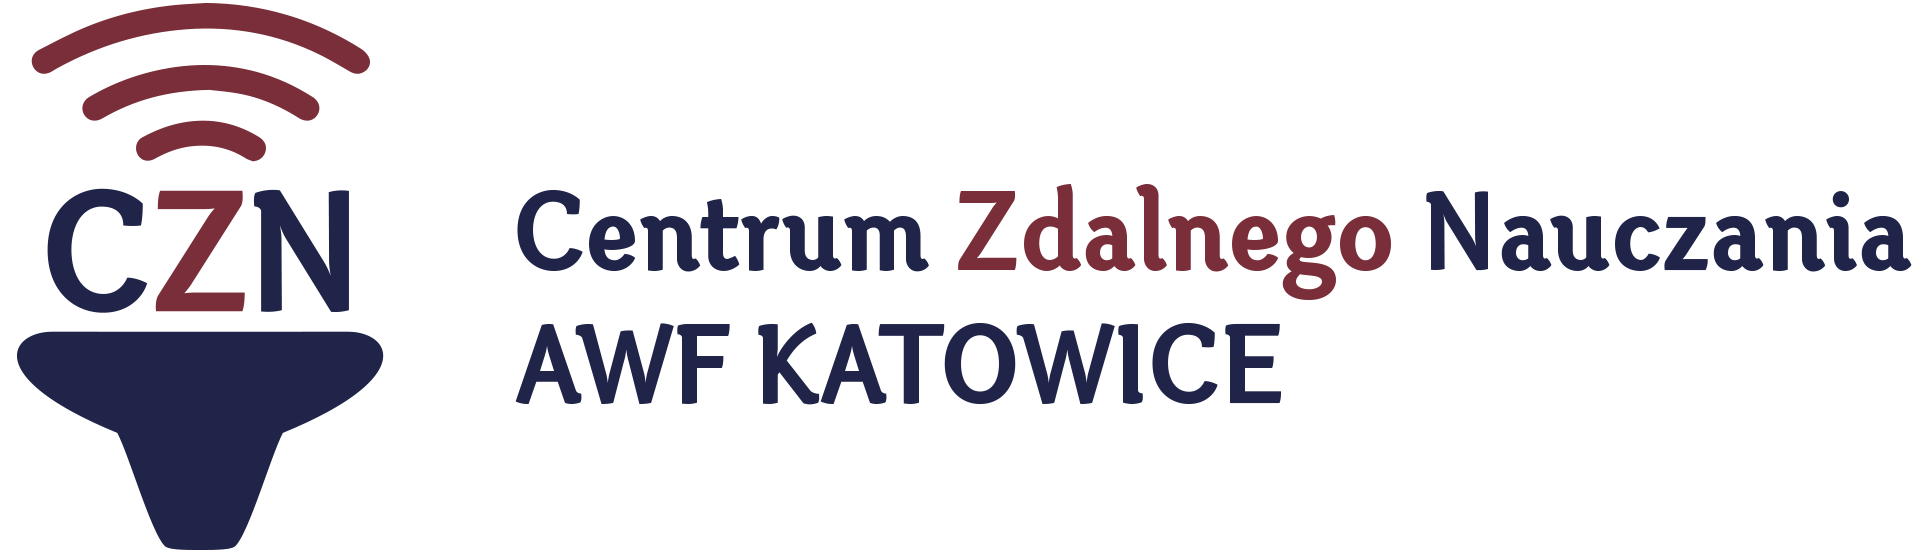 CZN AWF Katowice